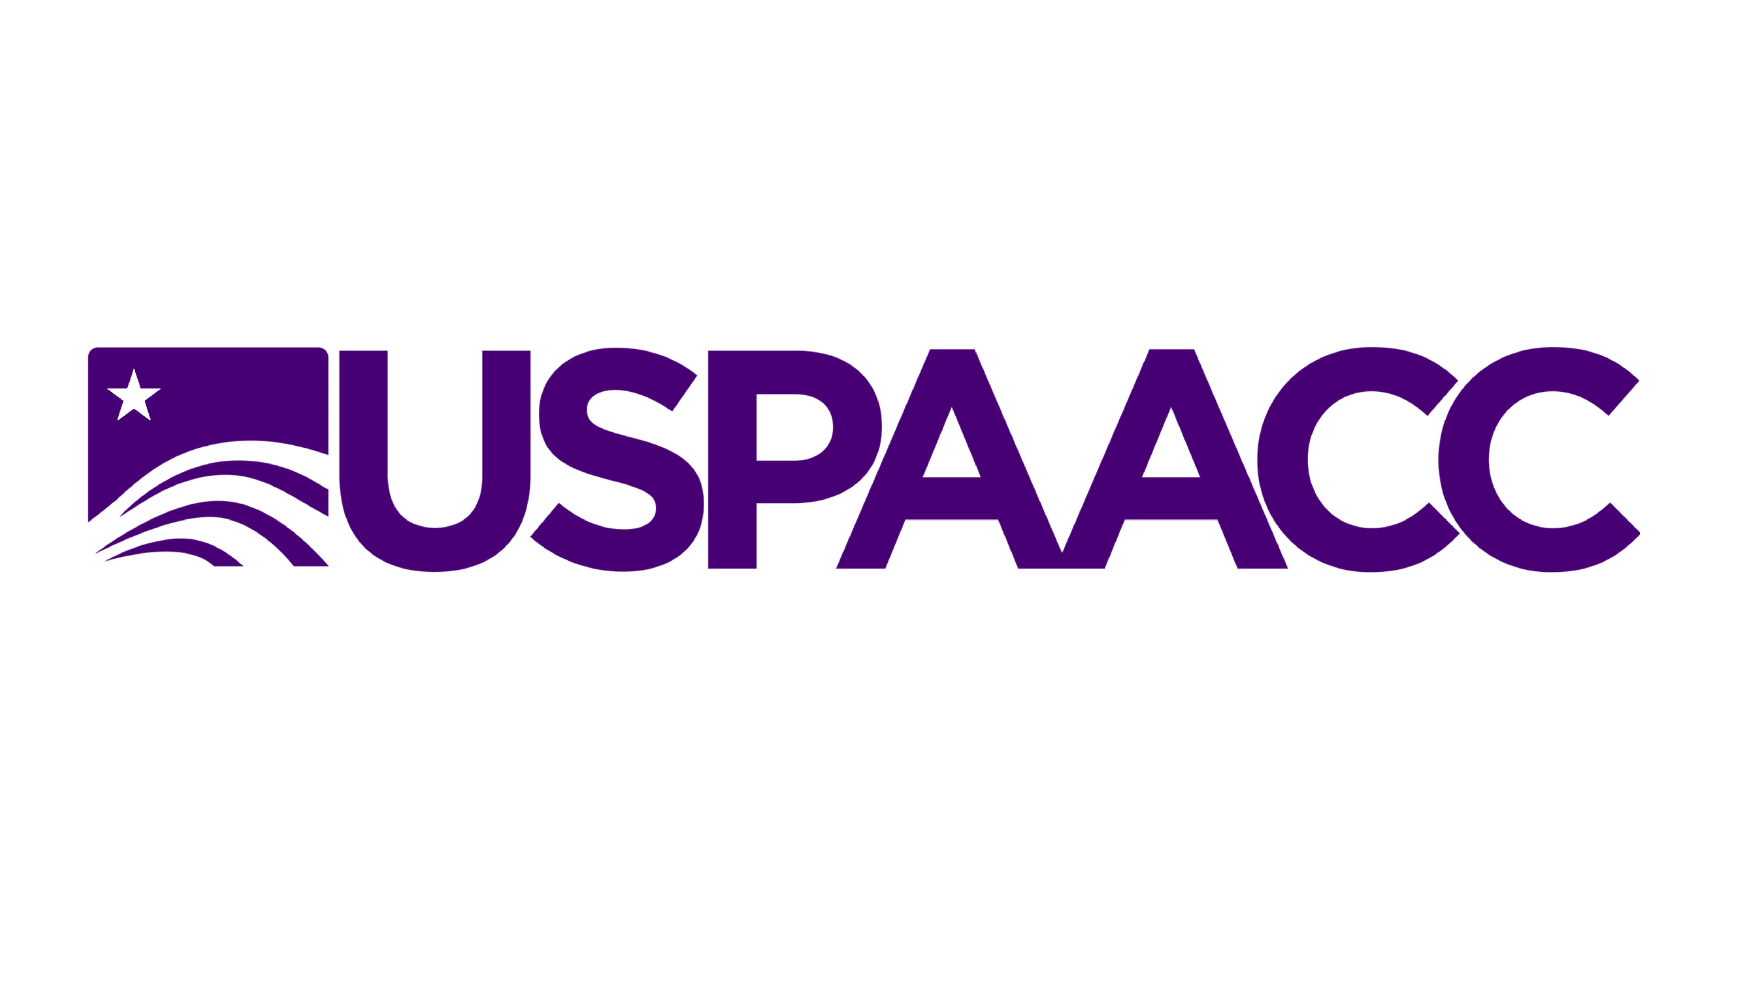 uspaacc purple logo